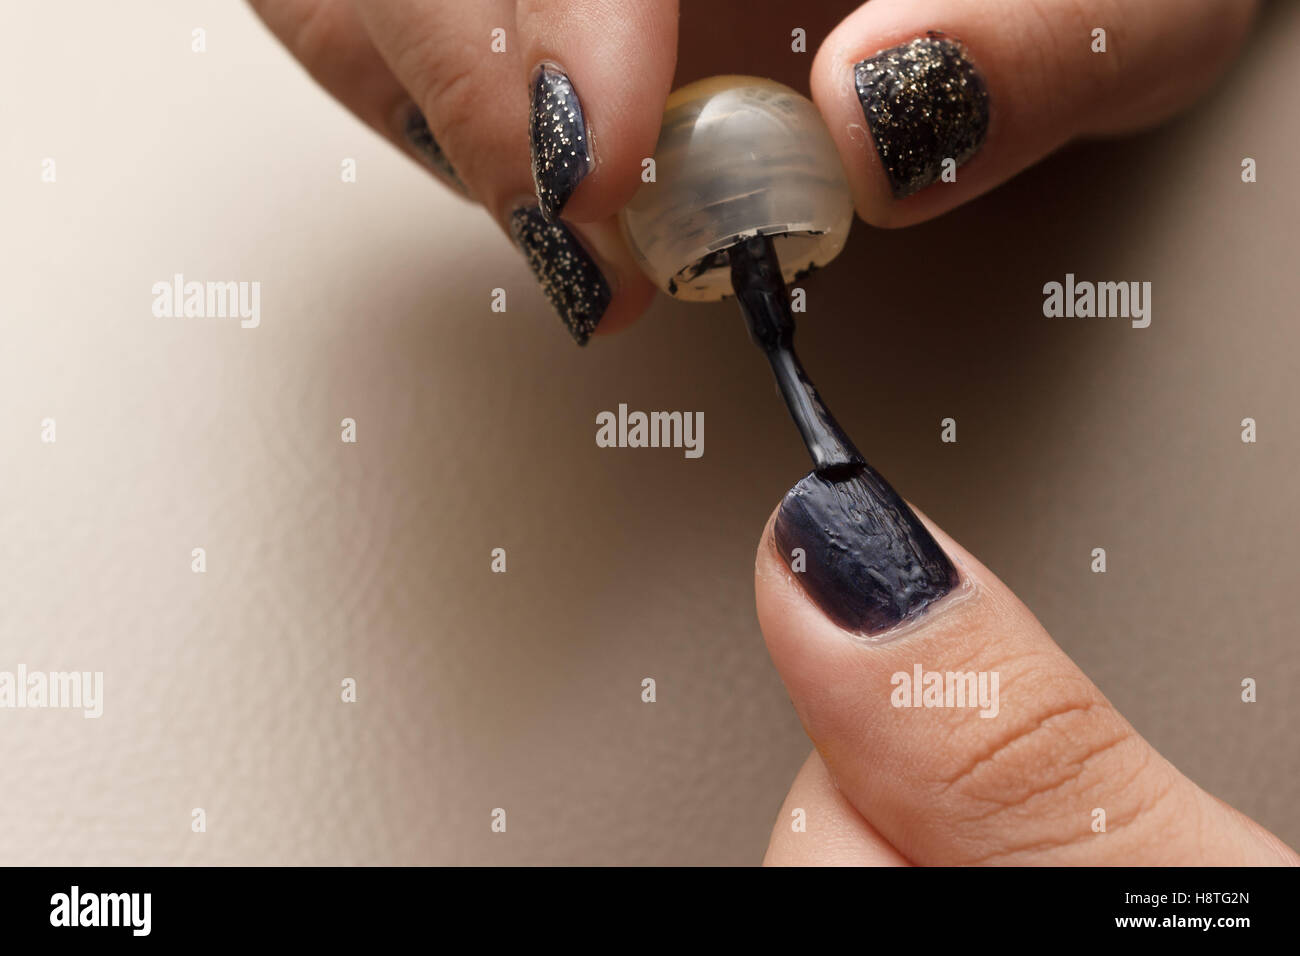 Quelqu'un d'appliquer délicatement le vernis à ongles de couleur noire à l'aide d'un pinceau pour faire un très beau nail art. Banque D'Images